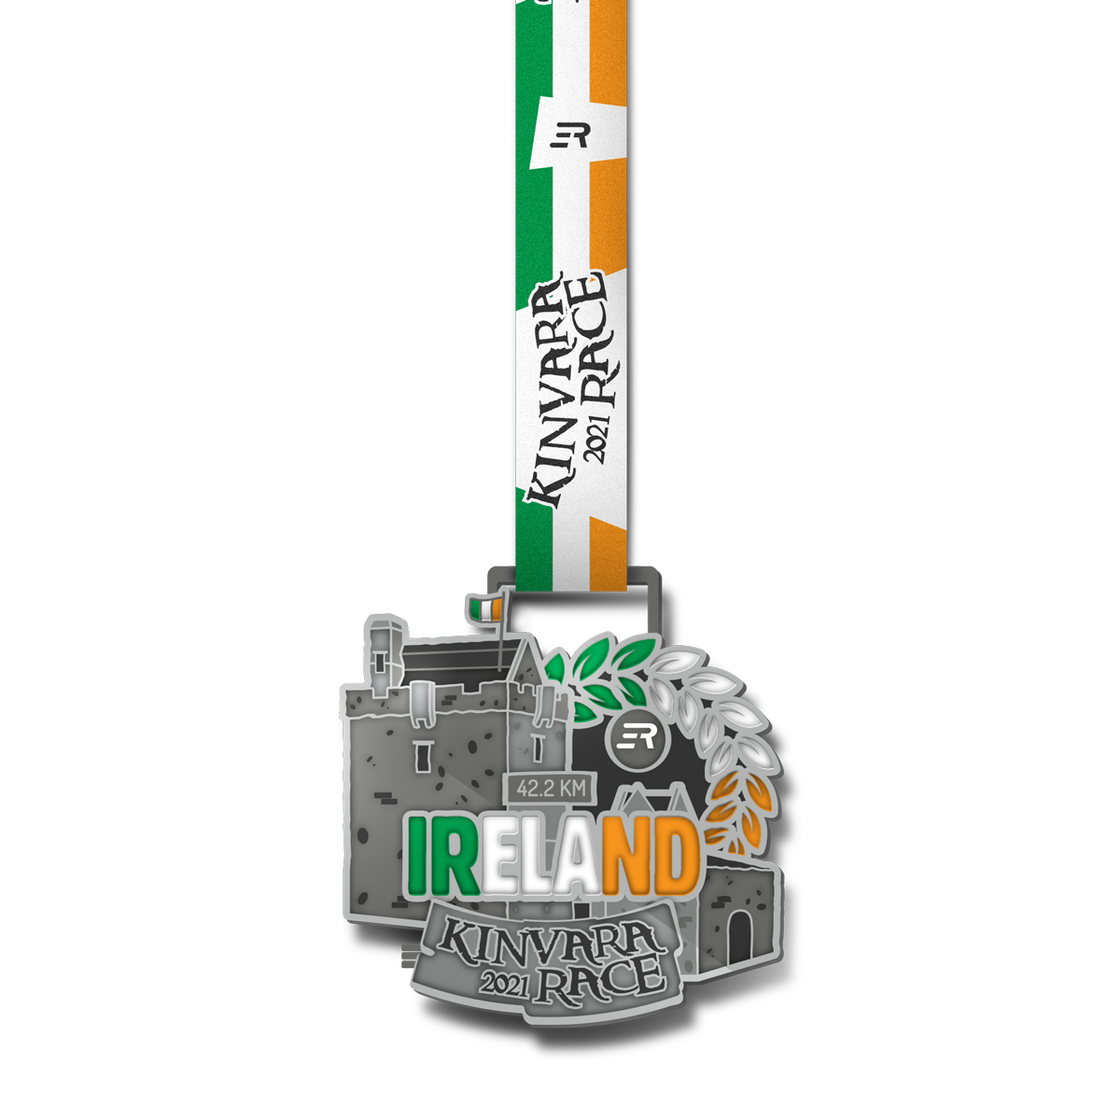 IRELAND - Kinvara Marathon 2021 | LAST CHANCE